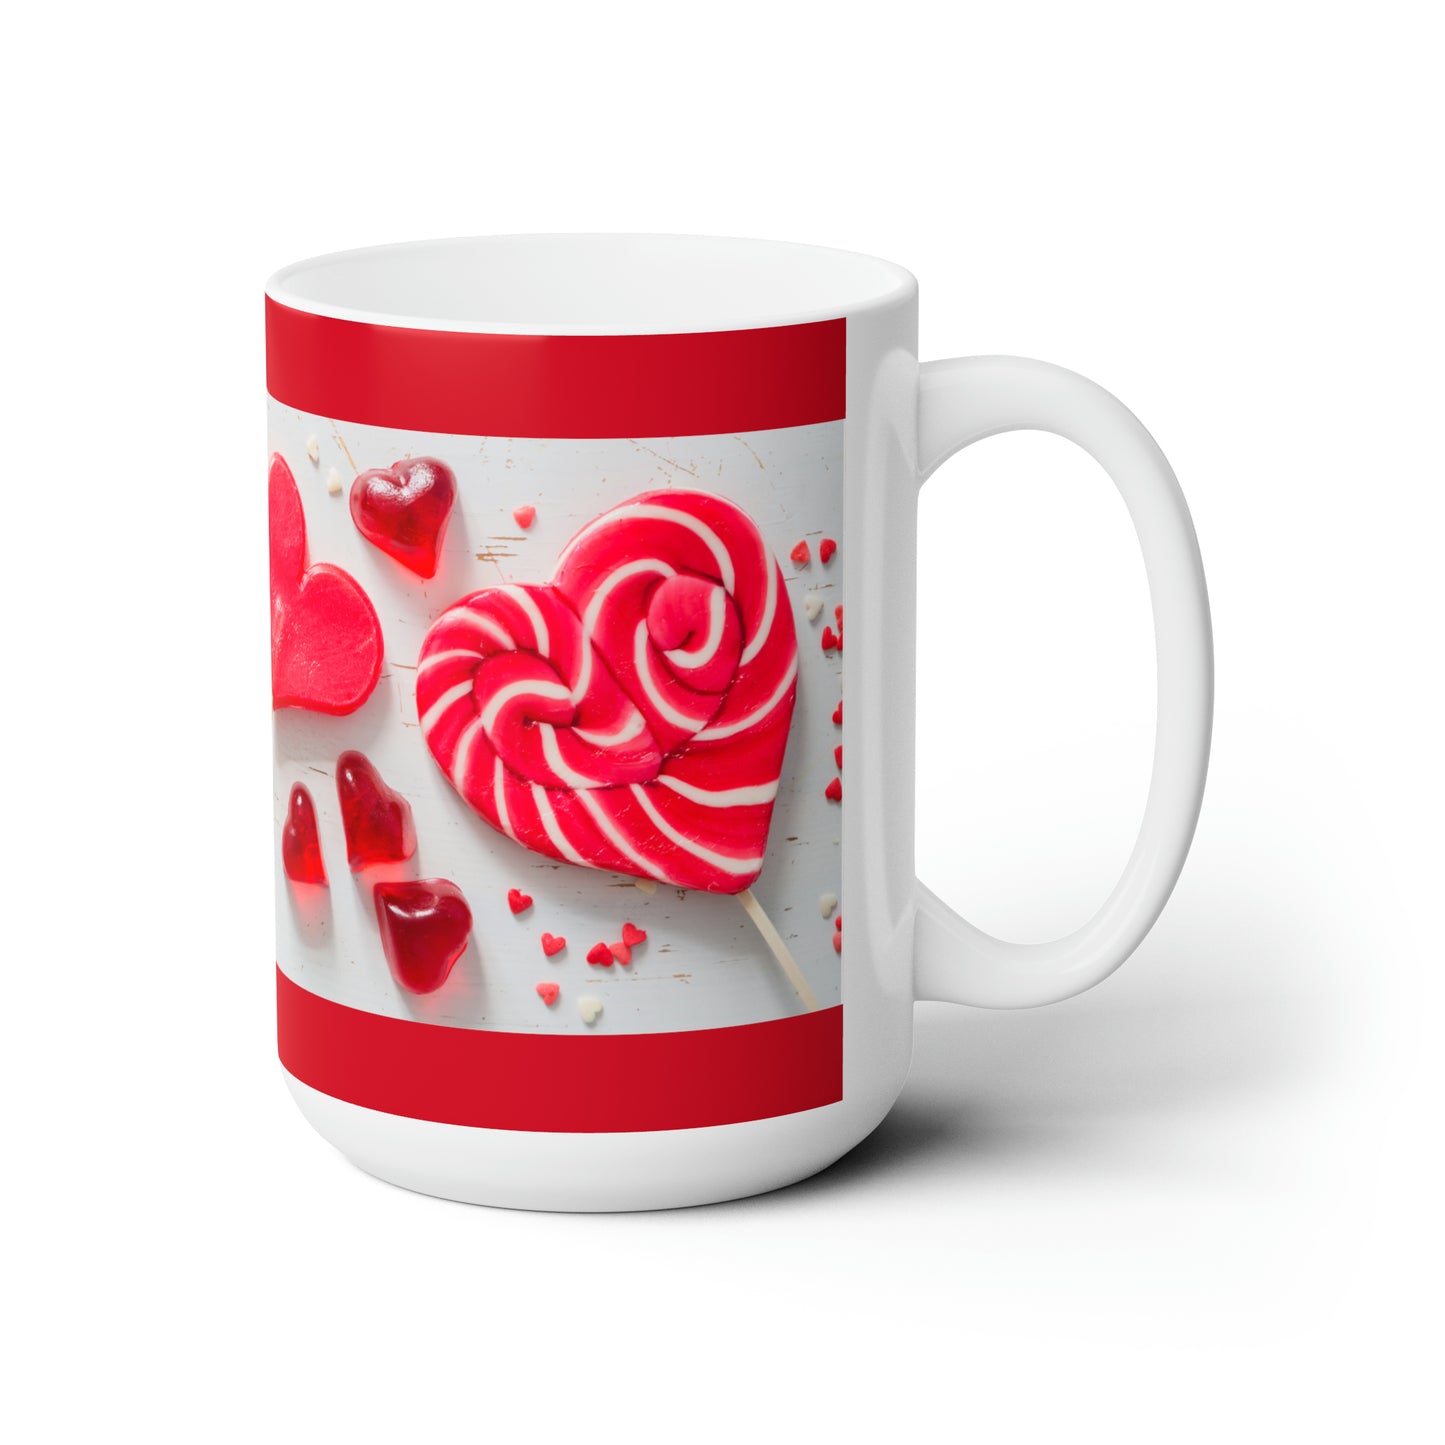 Lollipop Hearts Ceramic Mug, Large Size 15oz, Microwave Safe and Dishwasher Safe